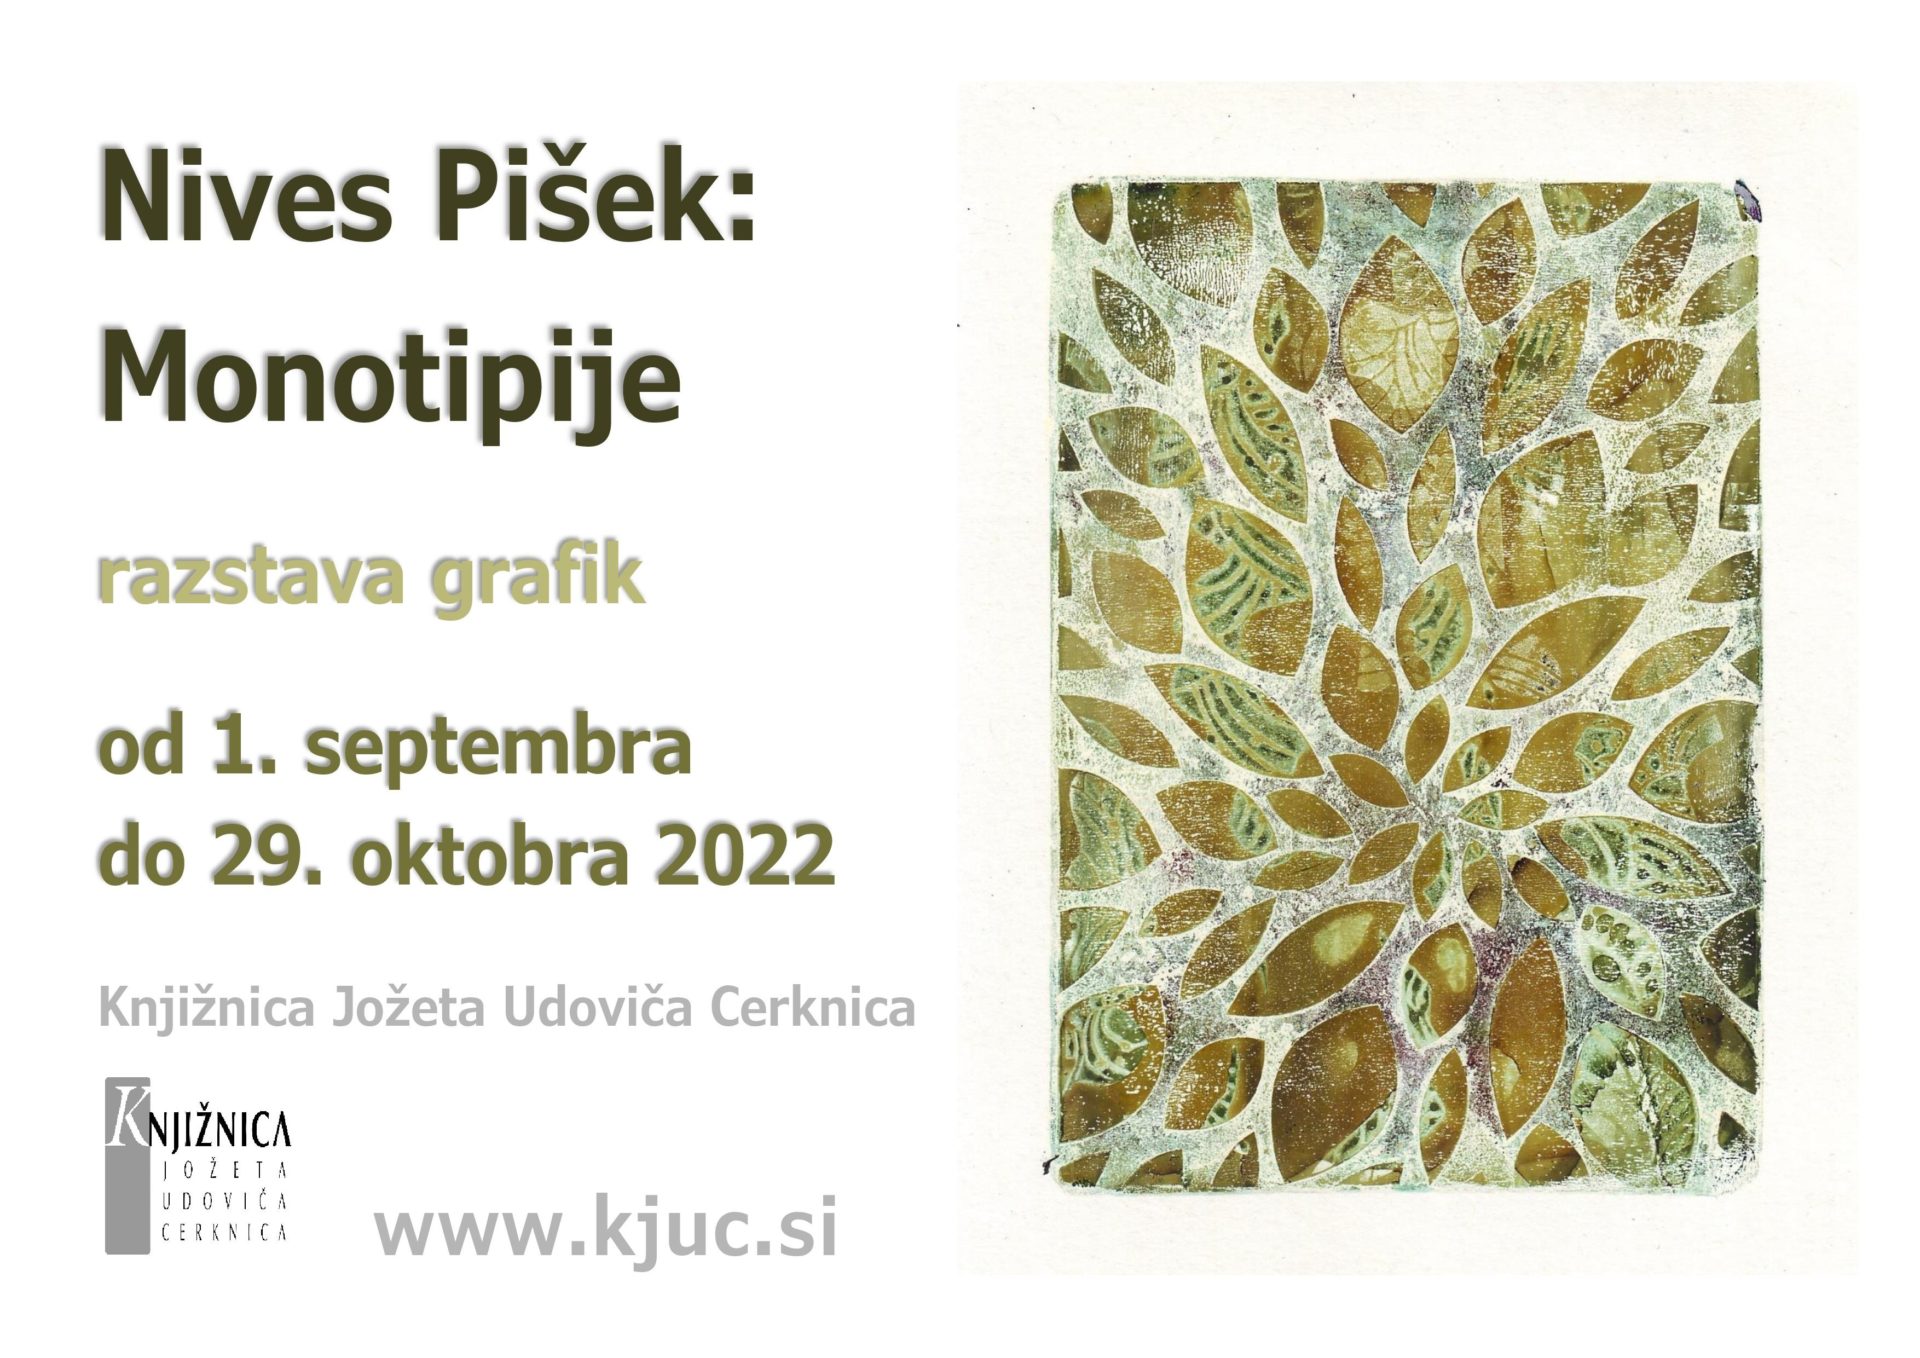 Nives Pisek page 001 - Nives Pišek: Monotipije - razstava grafik